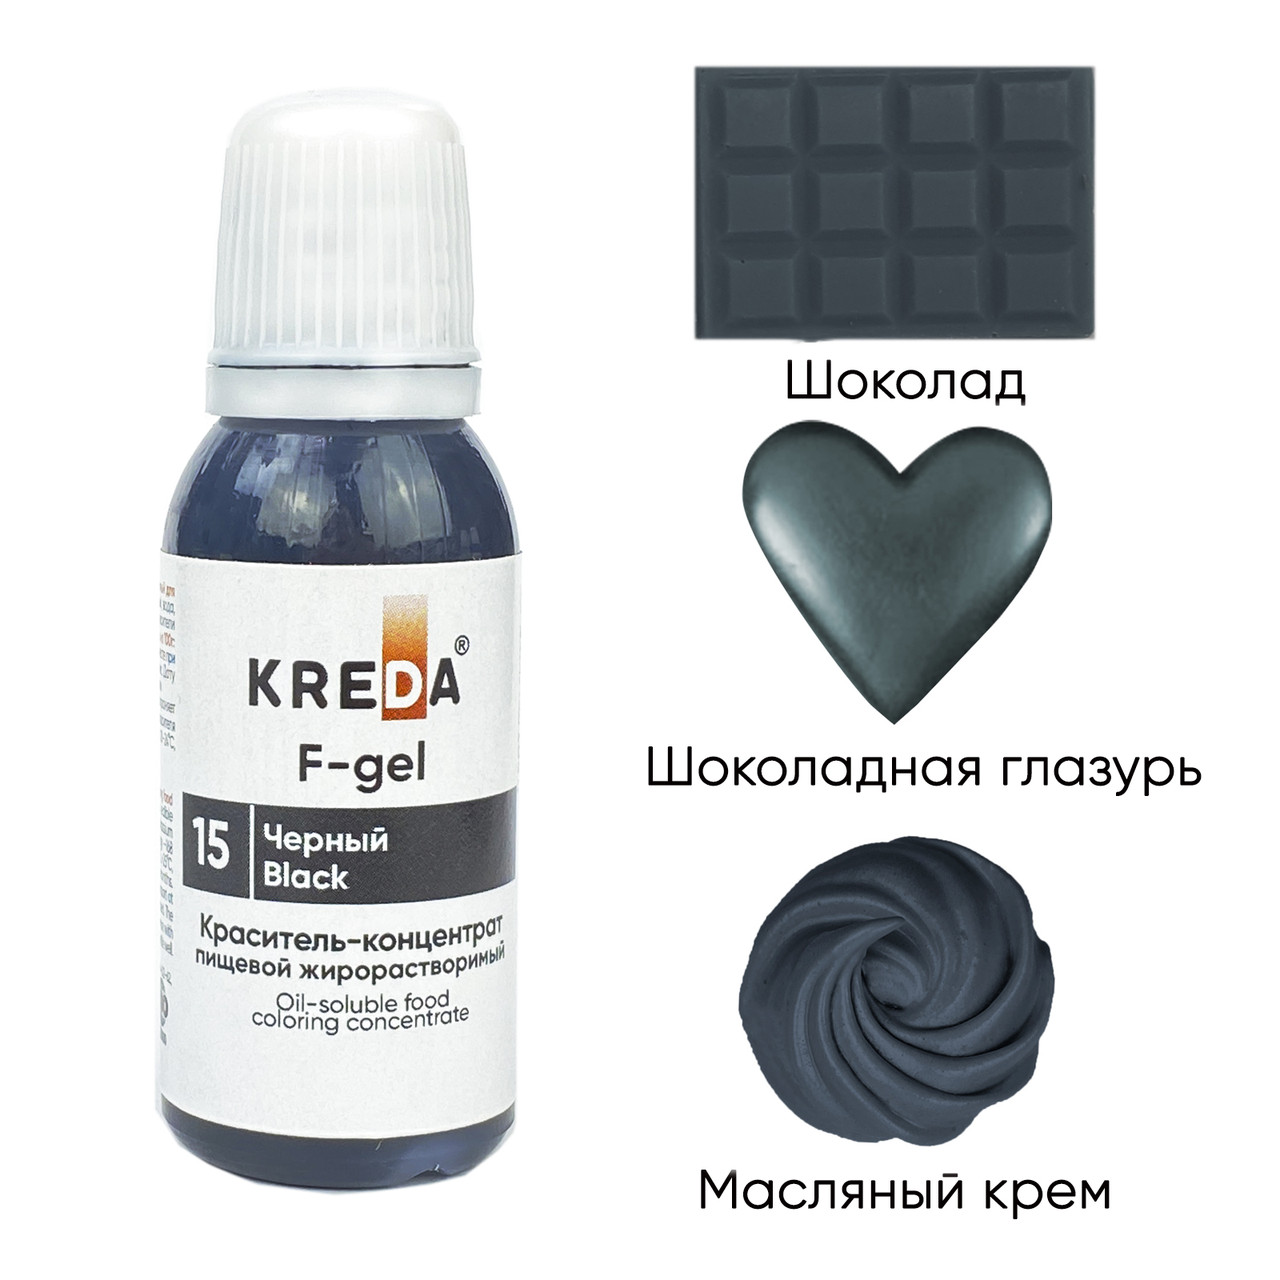 F-gel 15 черный, краситель концентрат жирорастворимый пищевой (20мл) KREDA